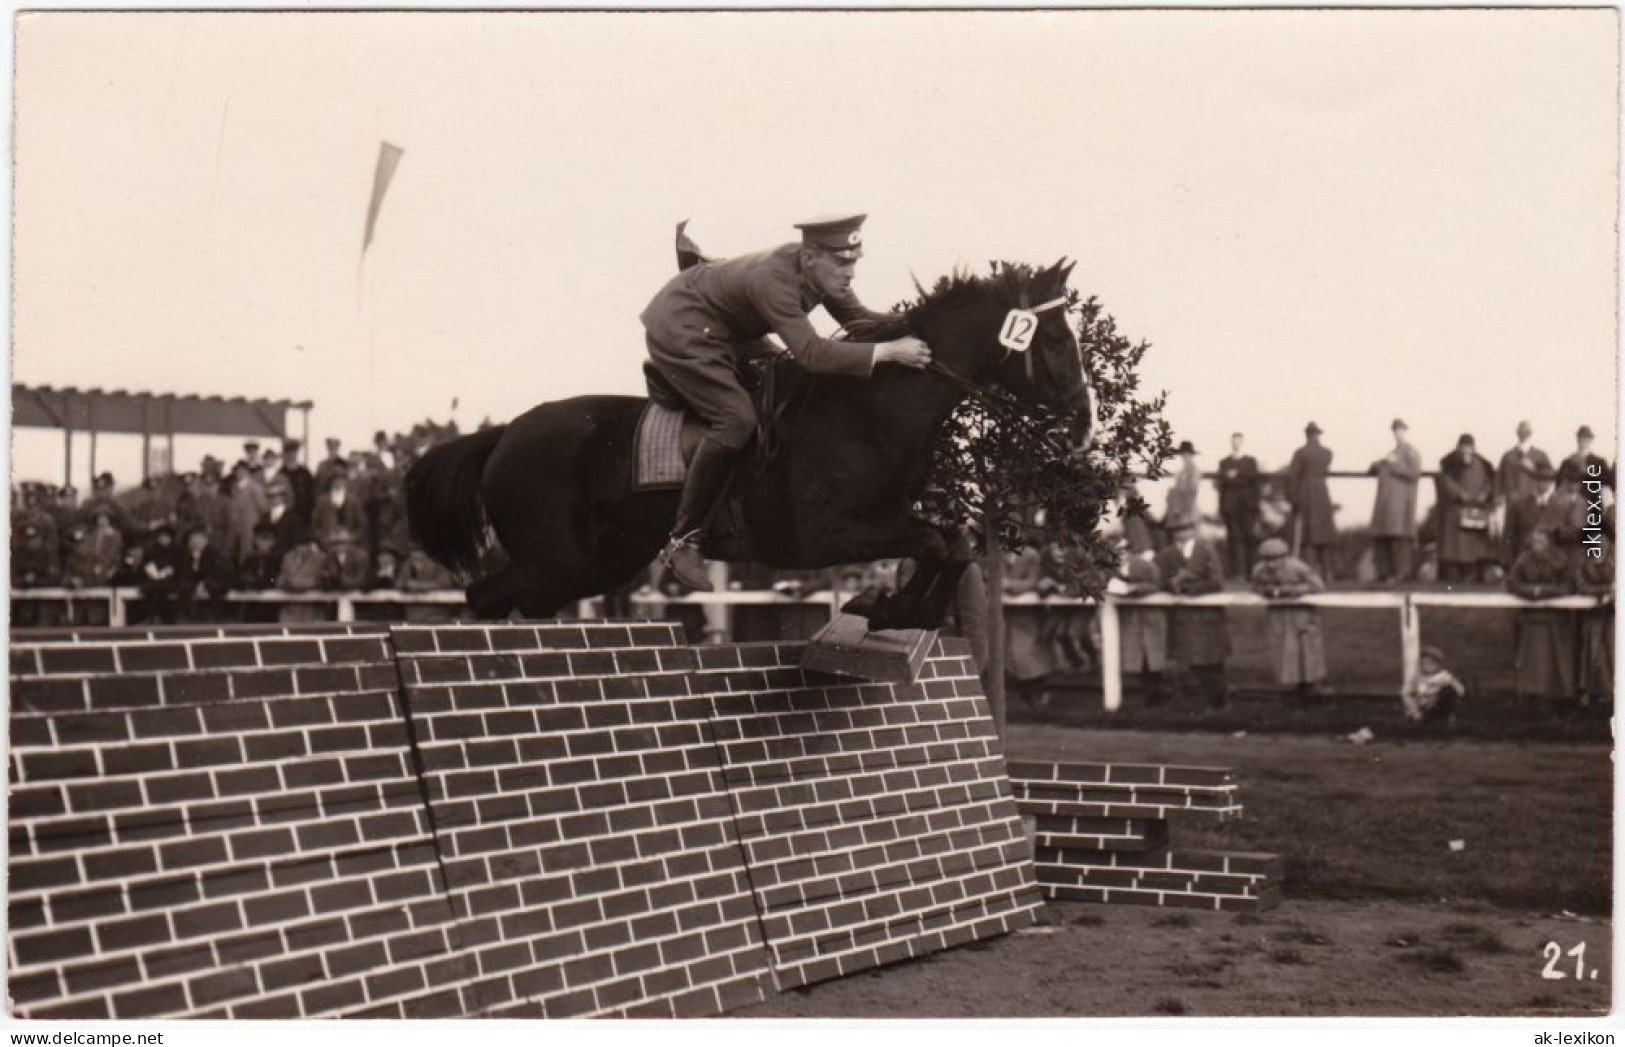 Ansichtskarte  Springreiter - Sprung über Mauer, Turnier 1924 - Hípica